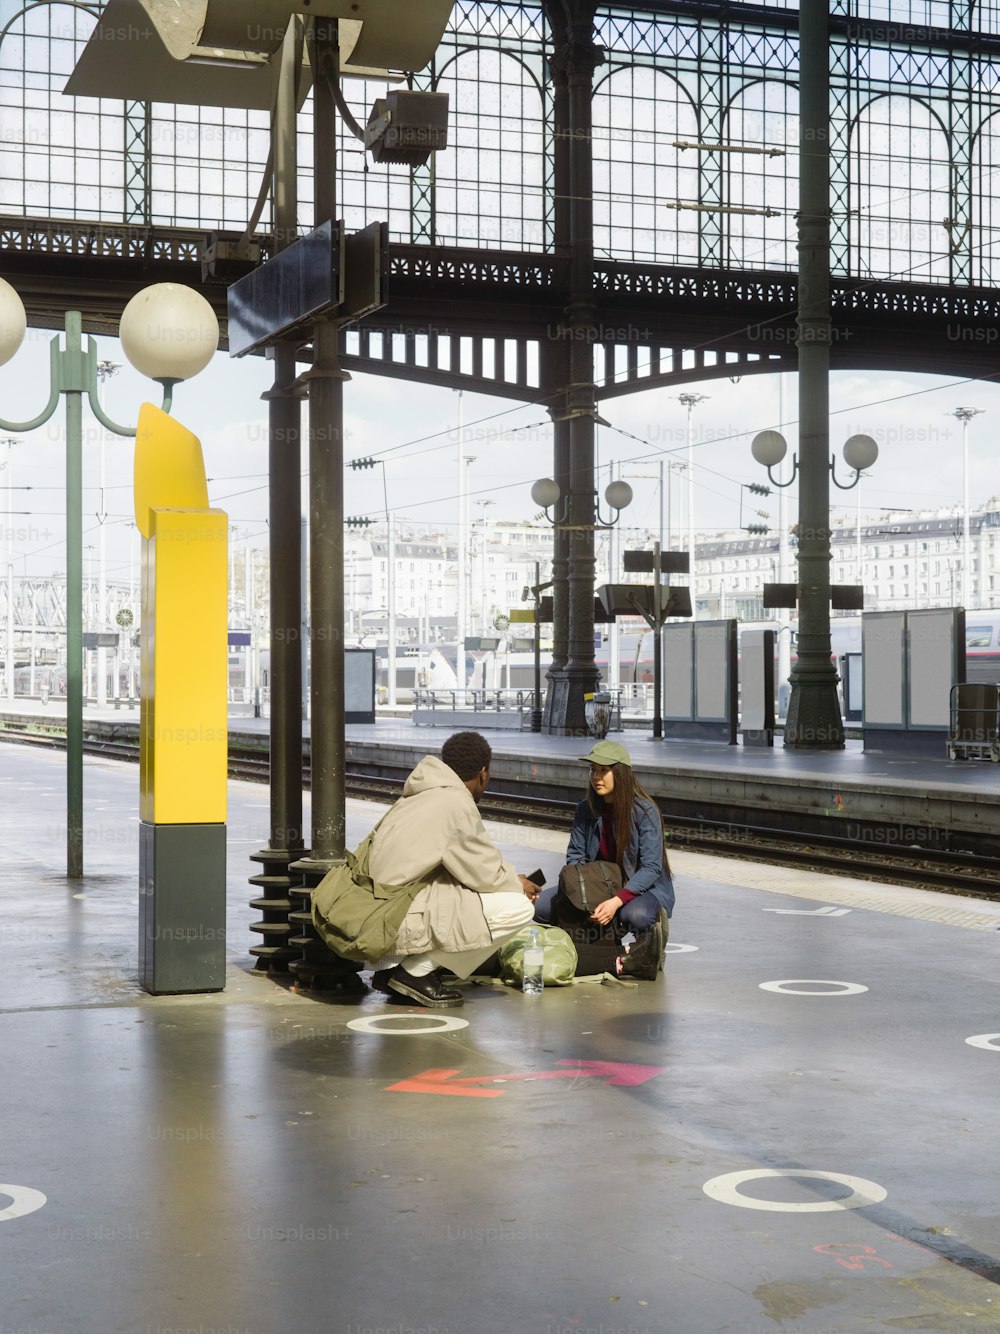 Zwei Personen sitzen auf einer Bank in einem Bahnhof